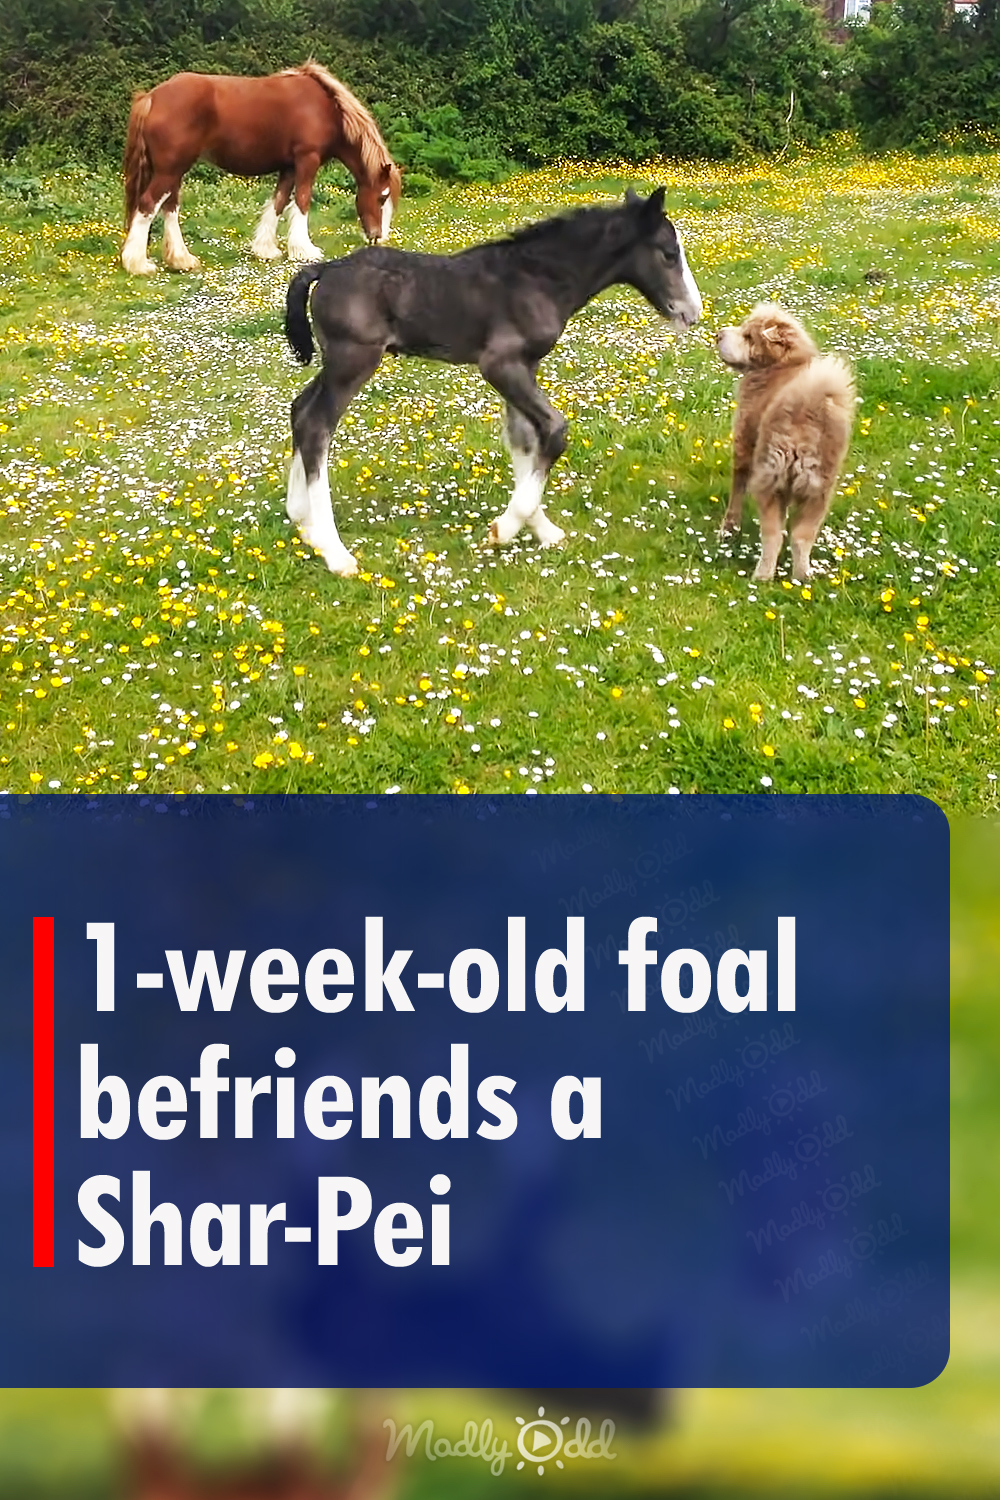 1-week-old foal befriends a Shar-Pei